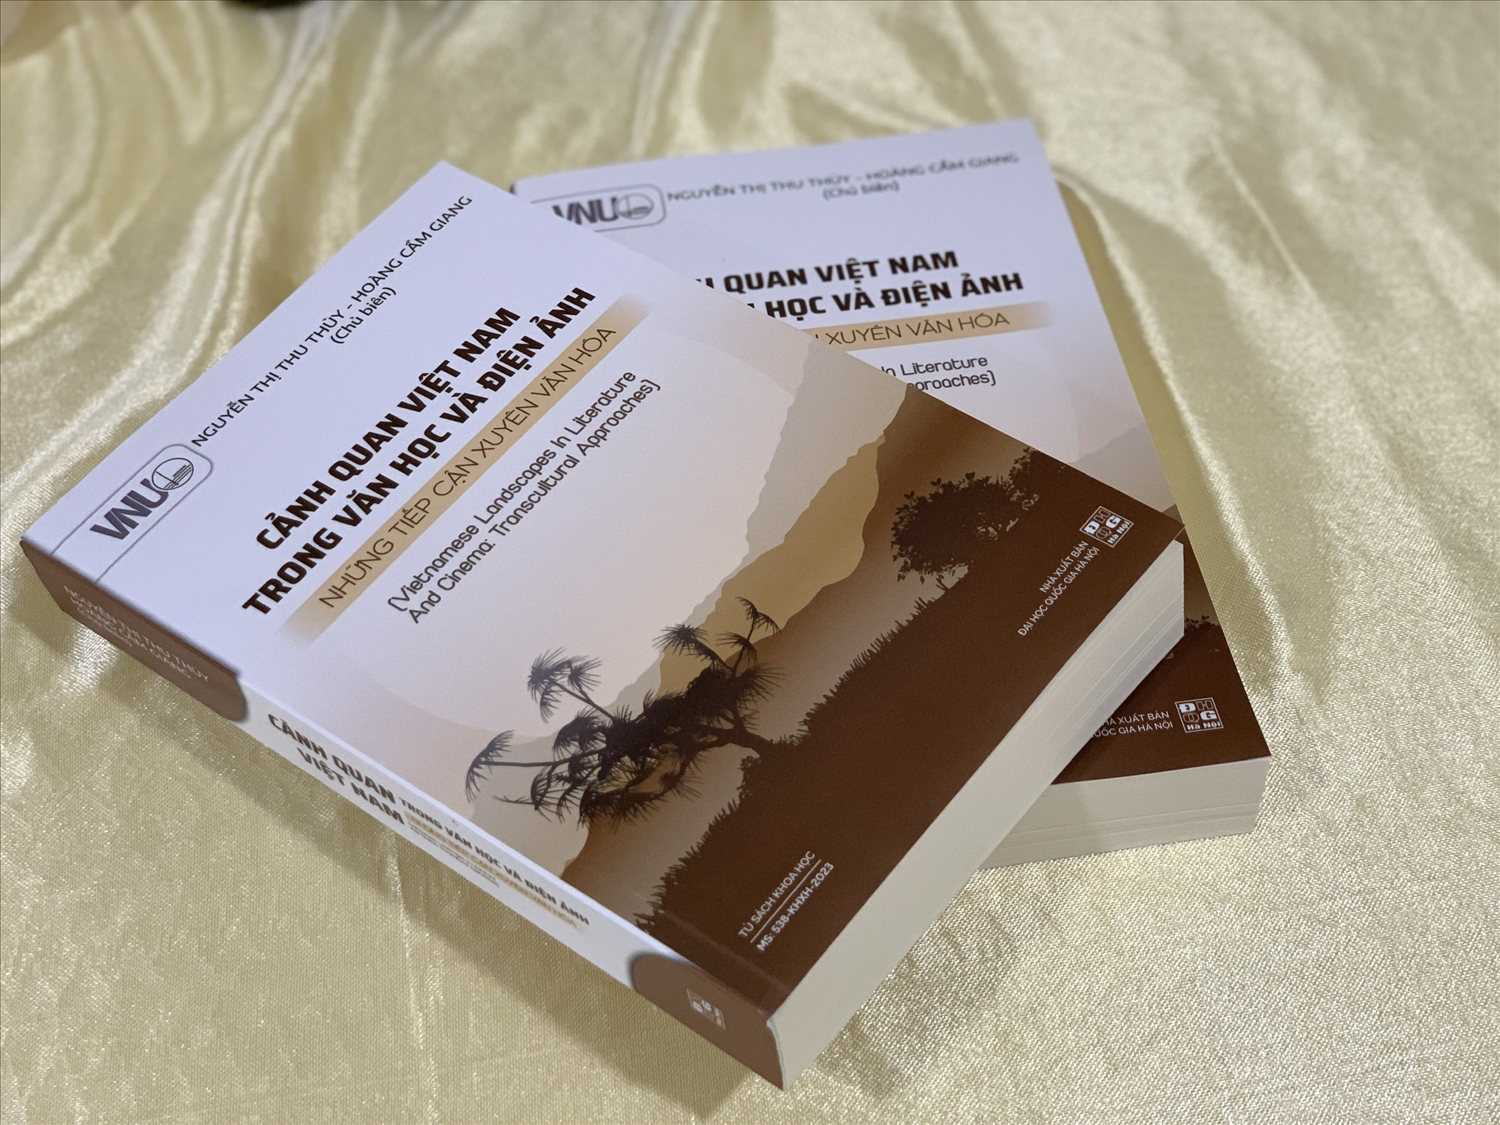 Cuốn sách "Cảnh quan Việt Nam trong Văn học và Điện ảnh: Những tiếp cận xuyên văn hóa" 